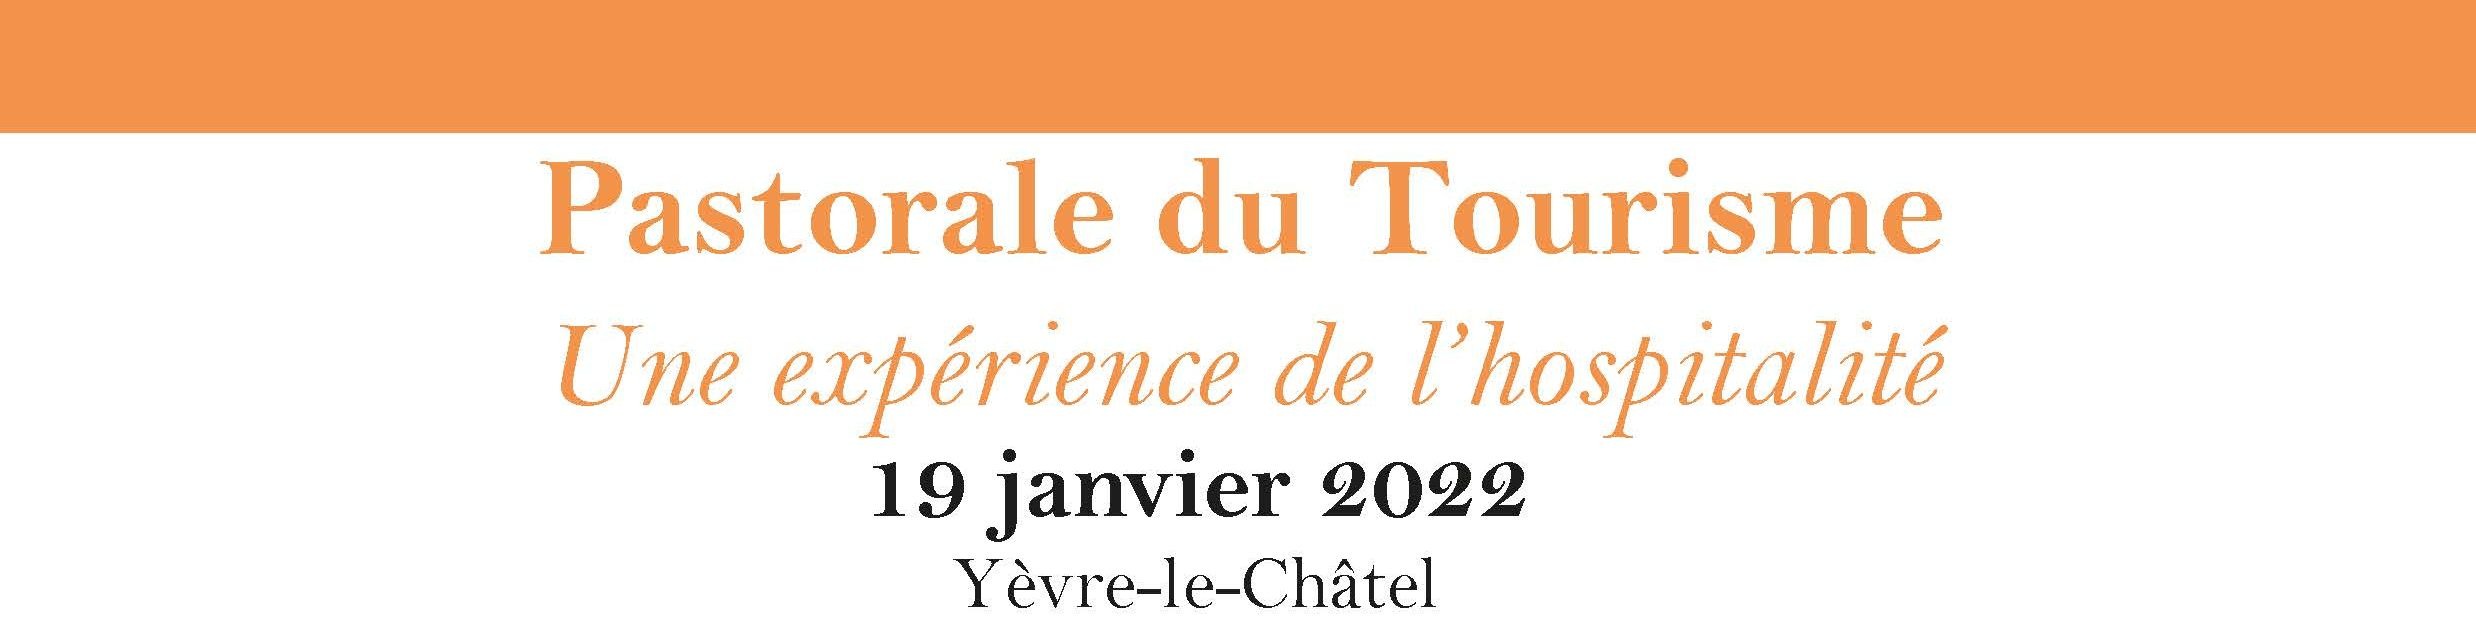 Colloque sur l'hospitalité dans les édifices religieux le 19 janvier 2022 à Yèvre-le-Châtel